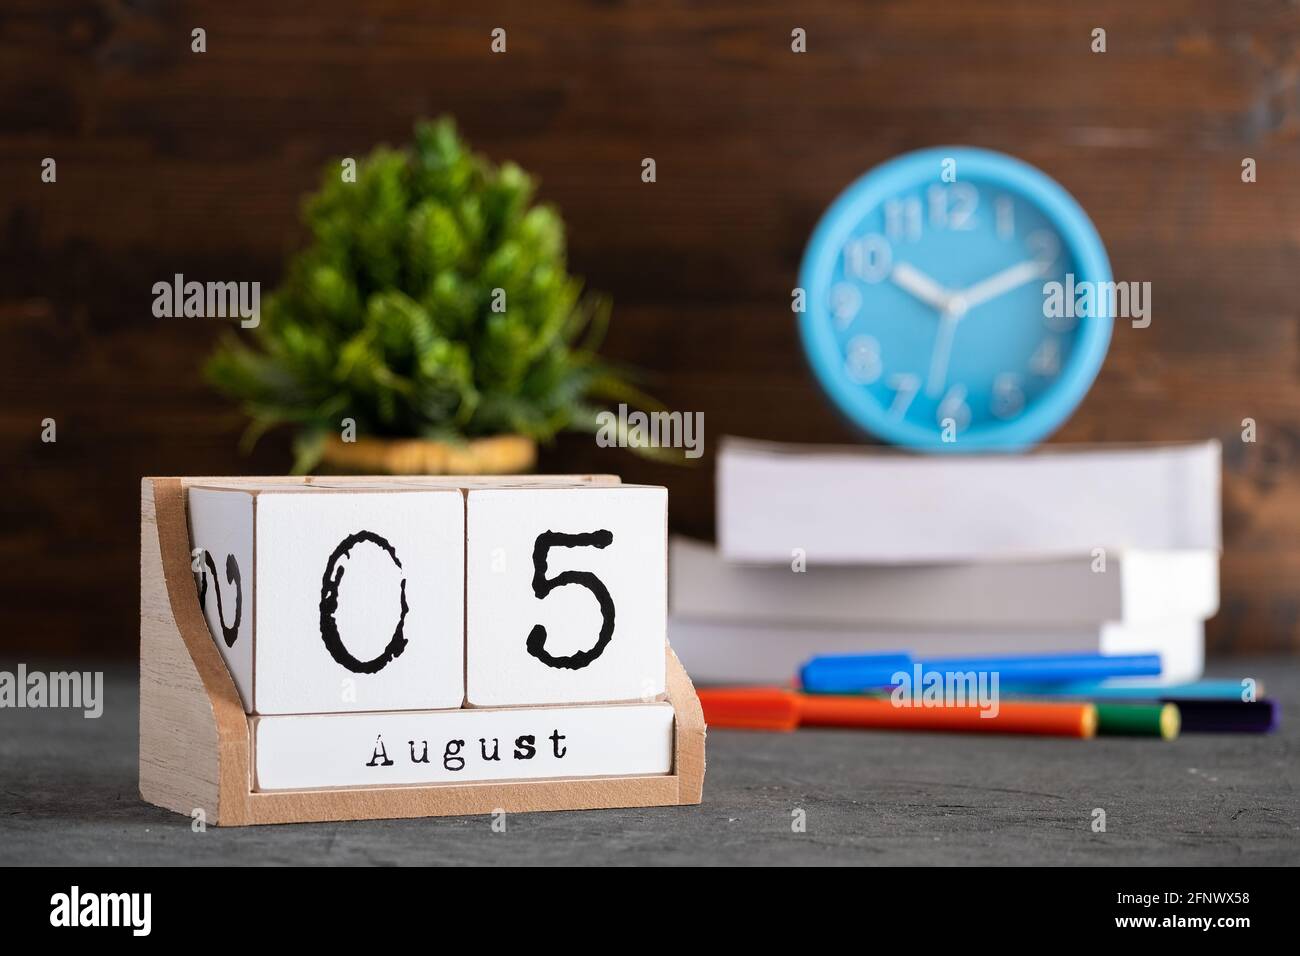 Le 05 août. Août 05 calendrier cube en bois avec des objets flous sur fond. Banque D'Images